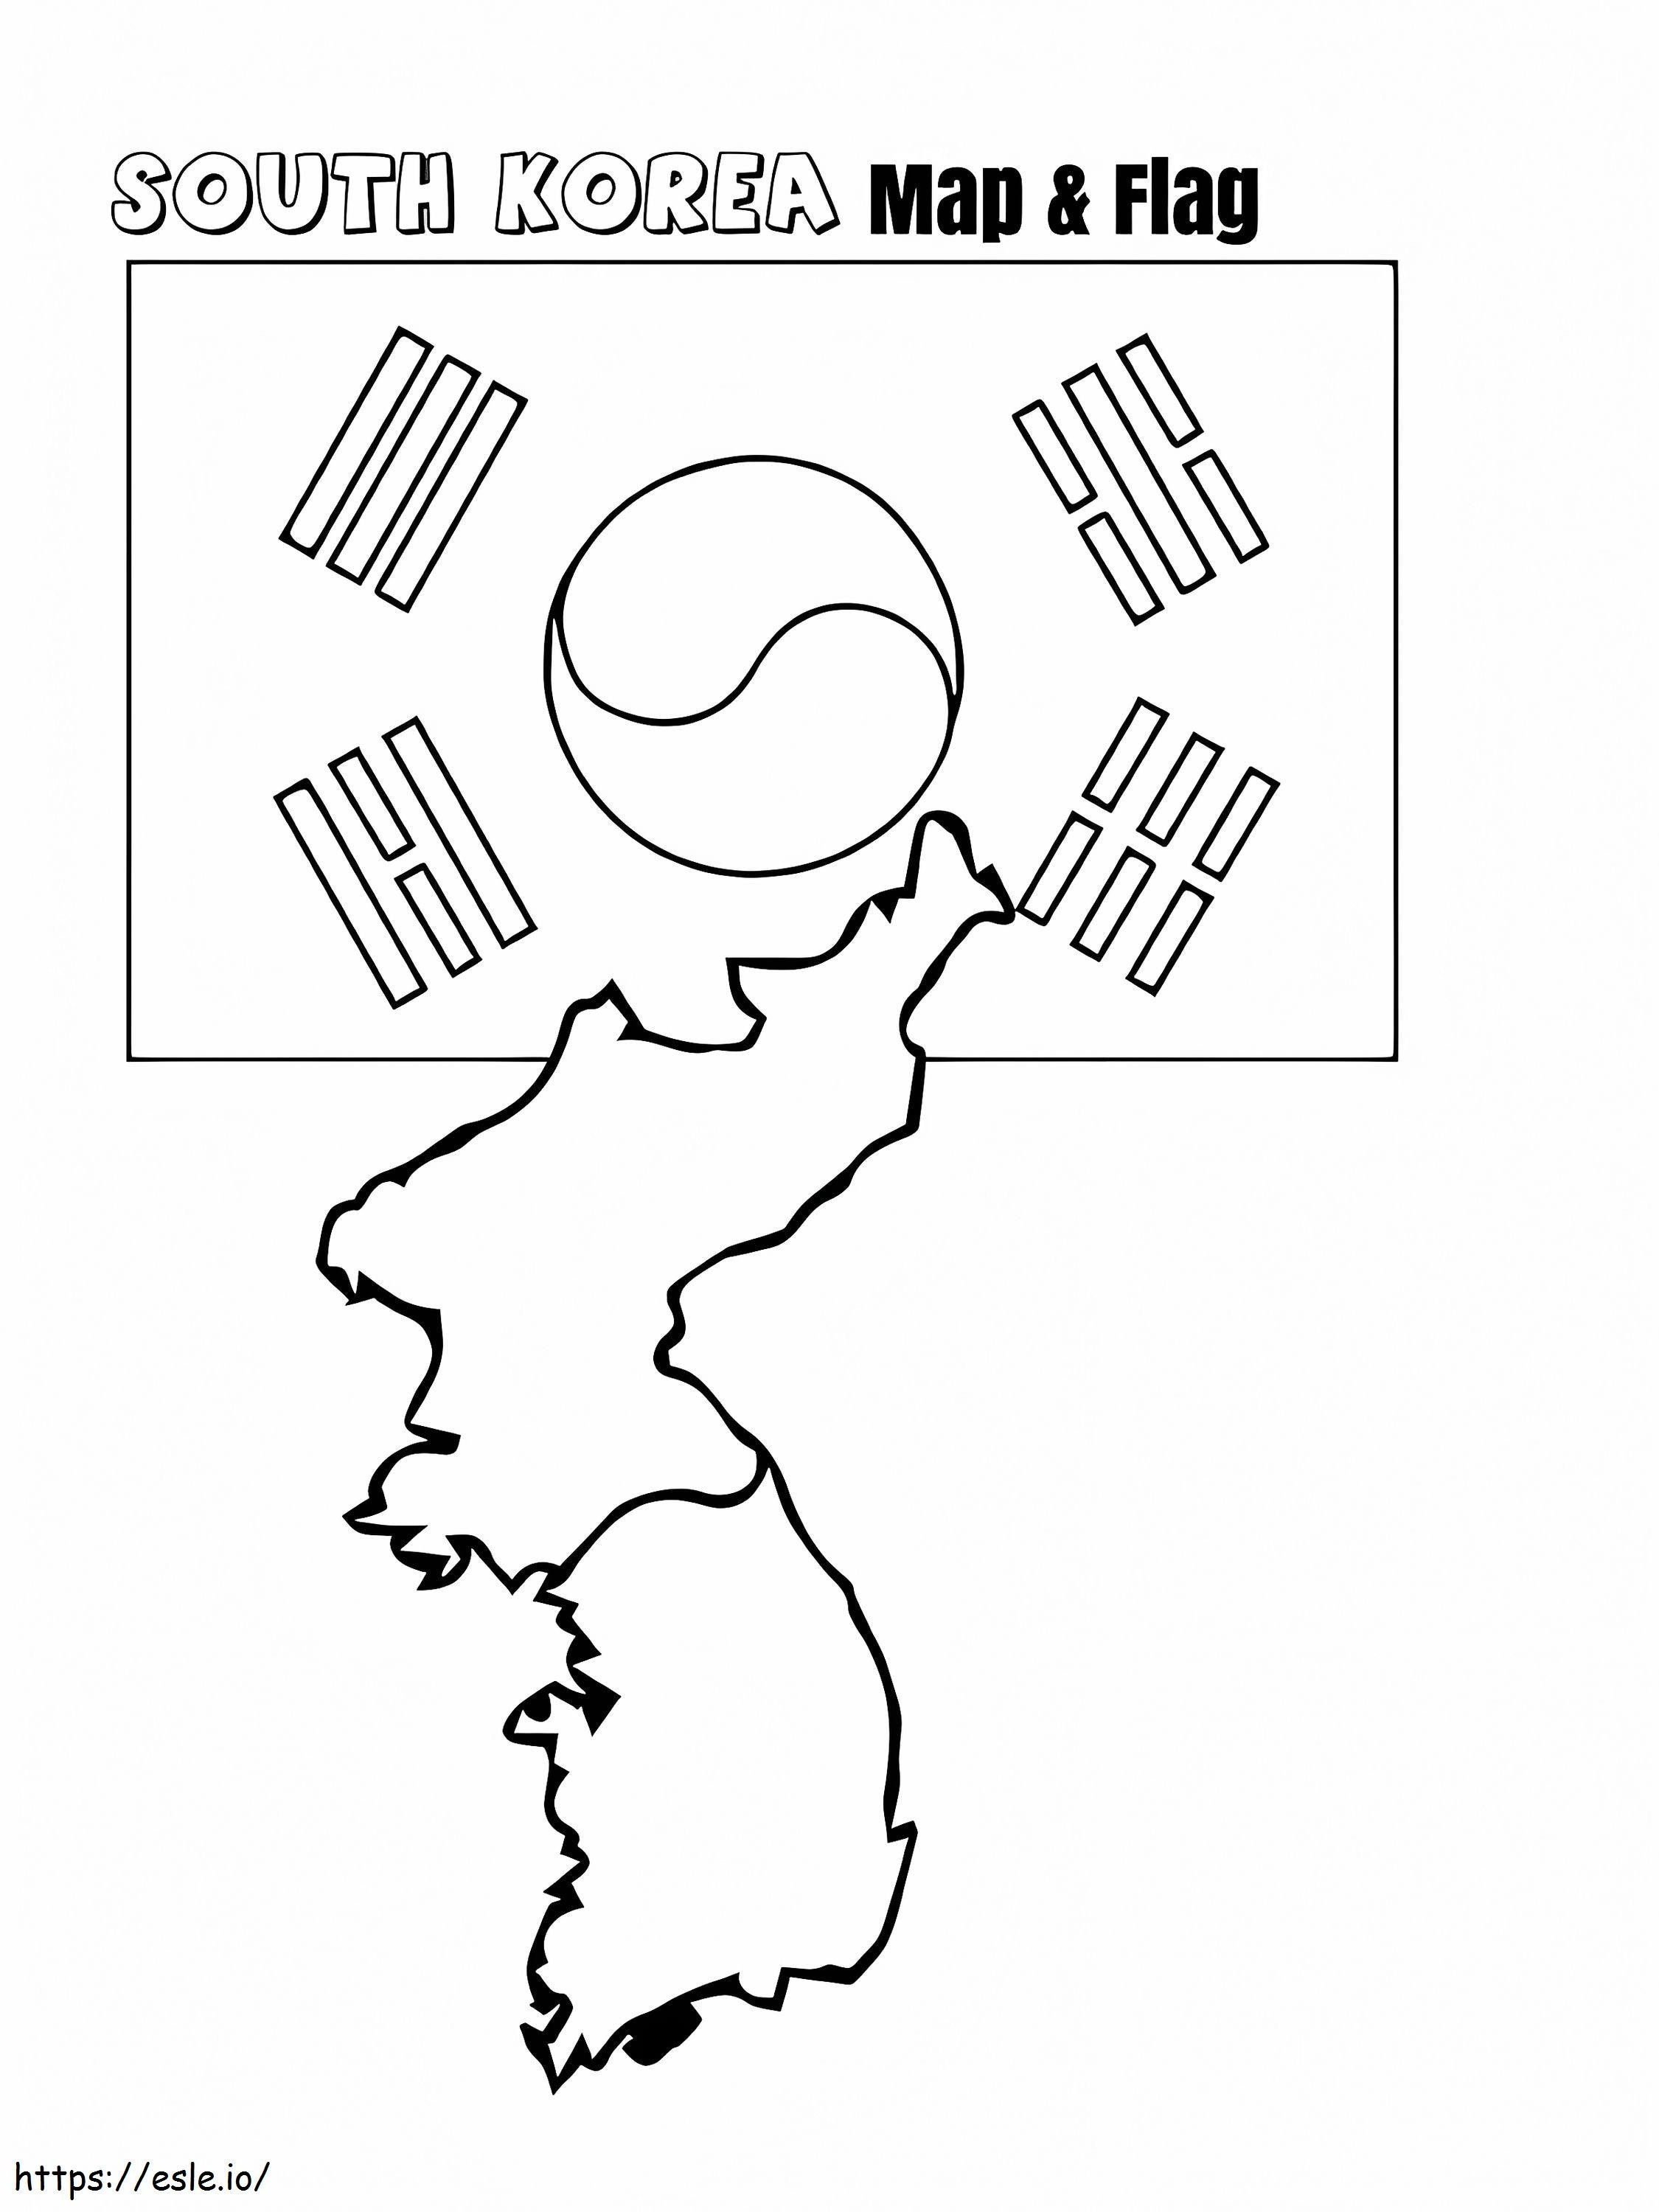 Mapa Korei Południowej i flaga kolorowanka